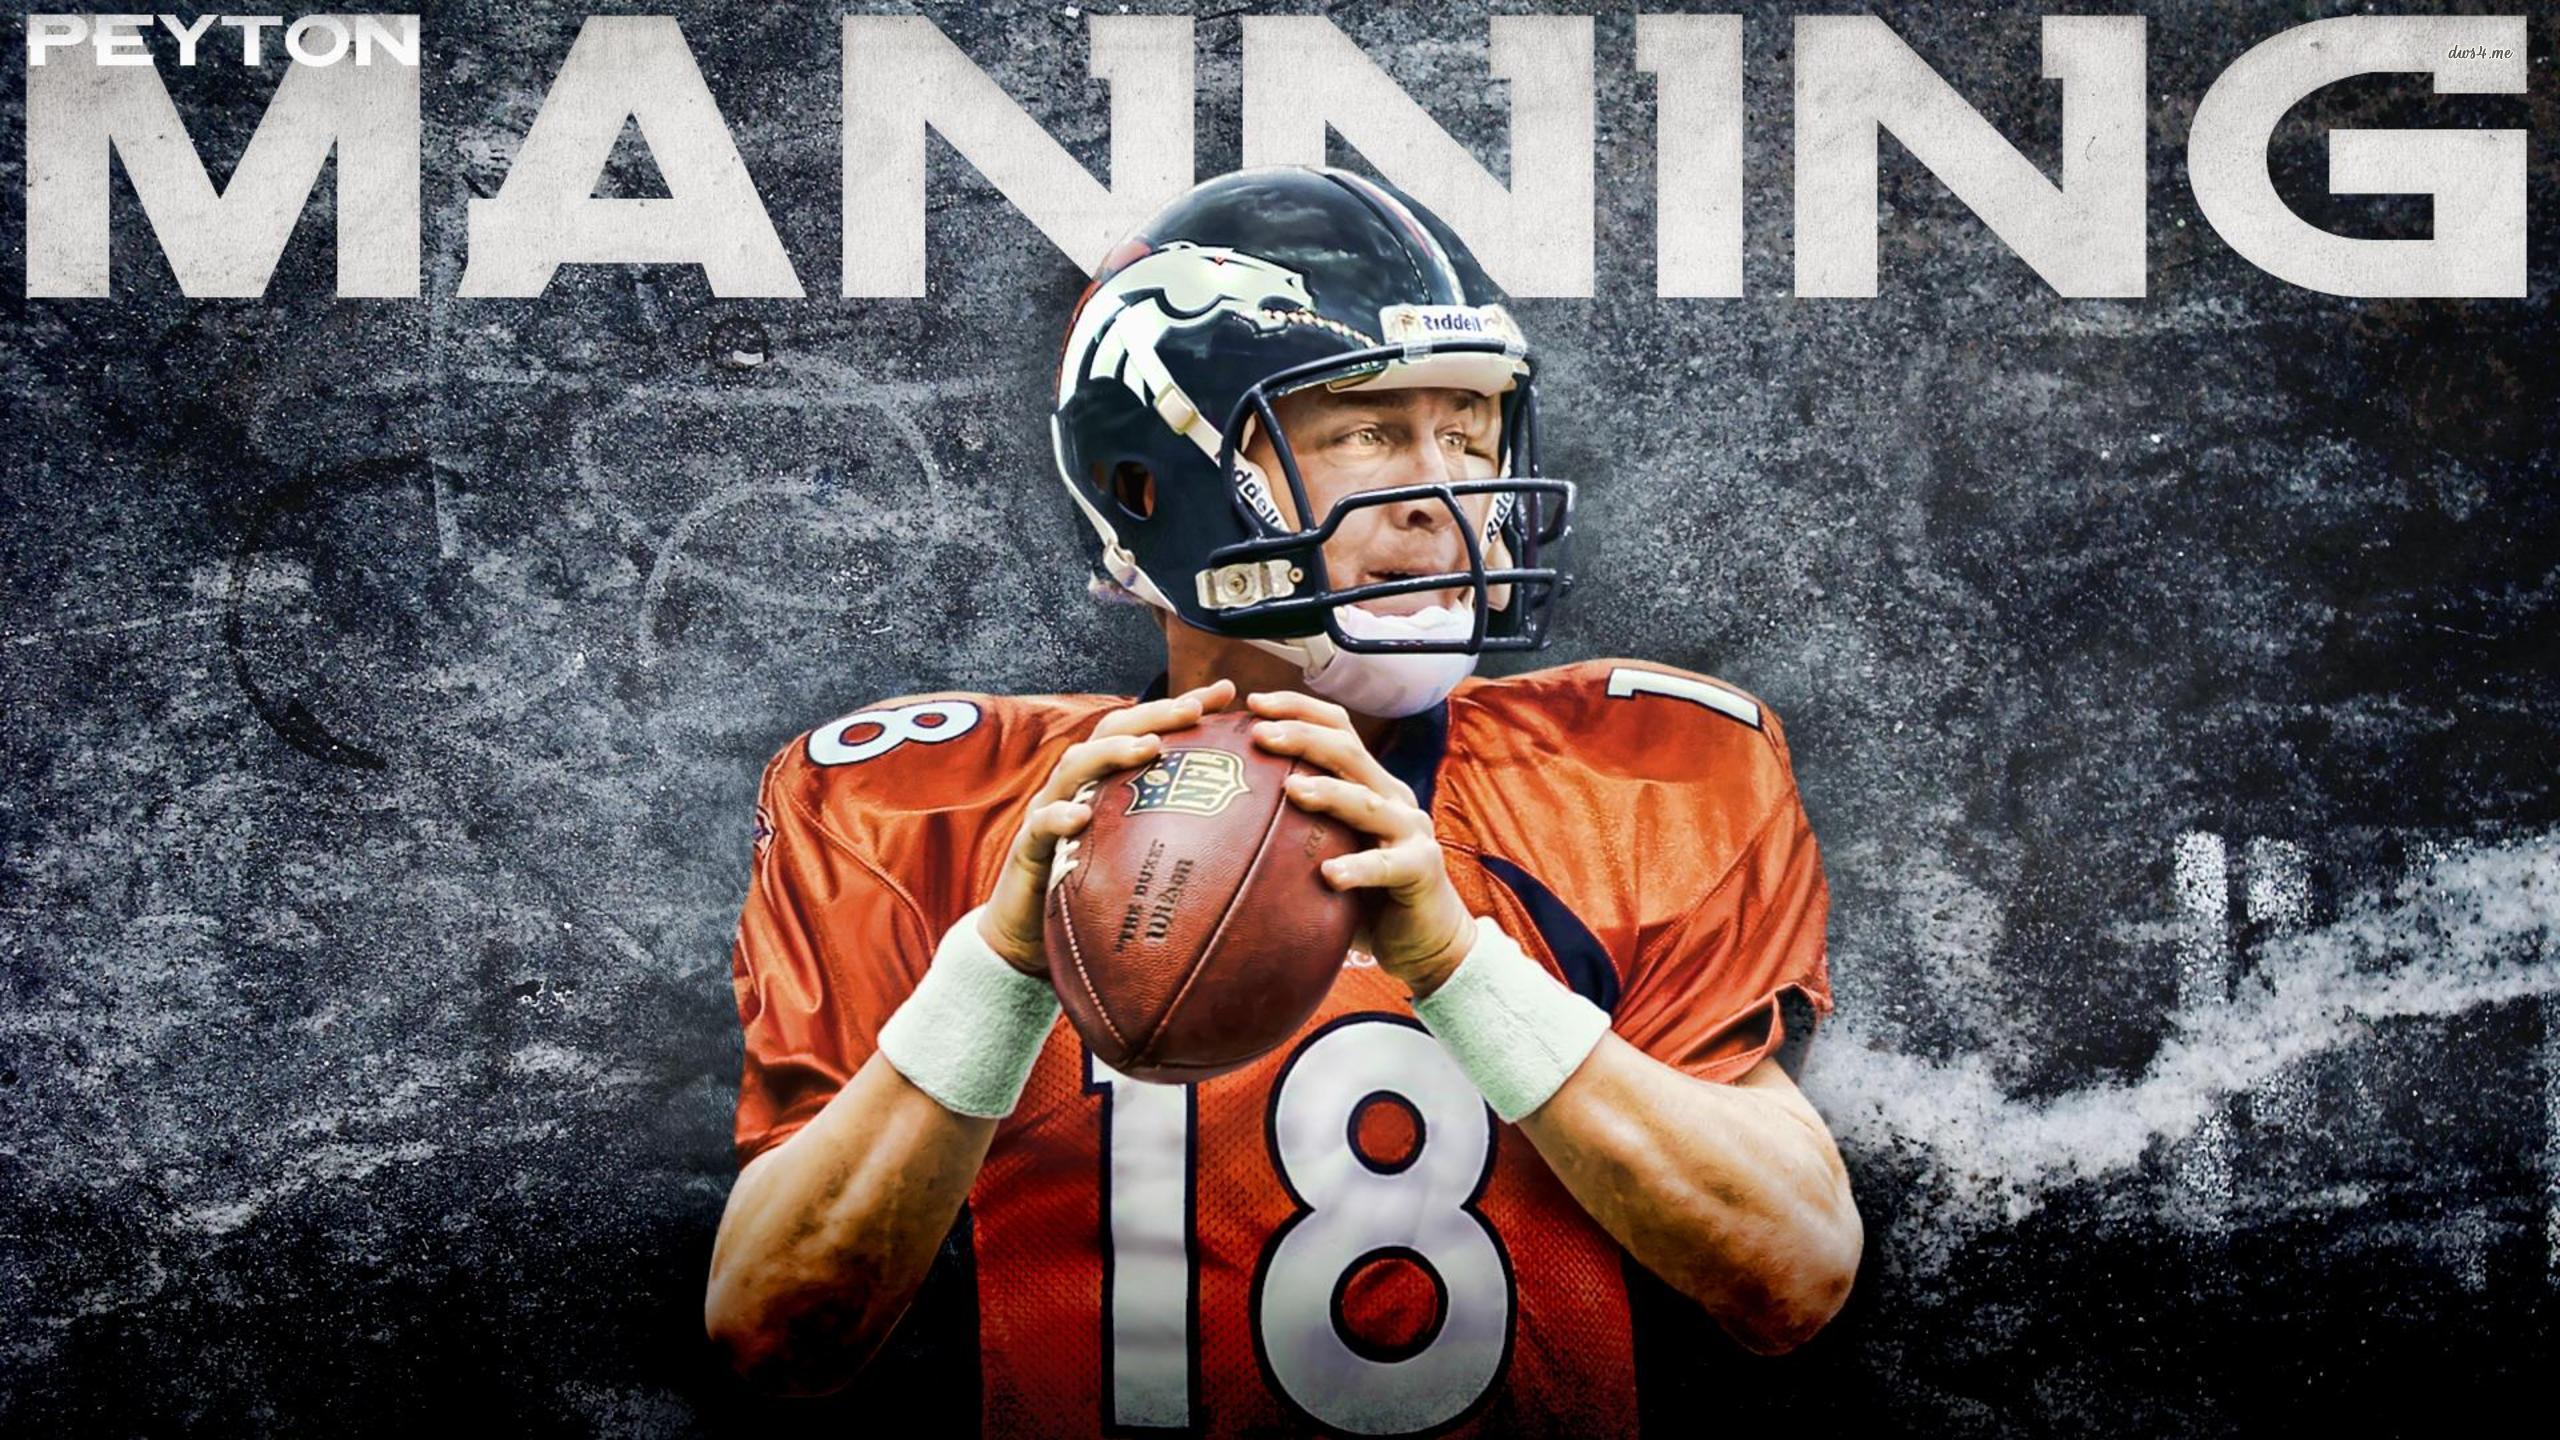 HD Peyton Manning Wallpaper